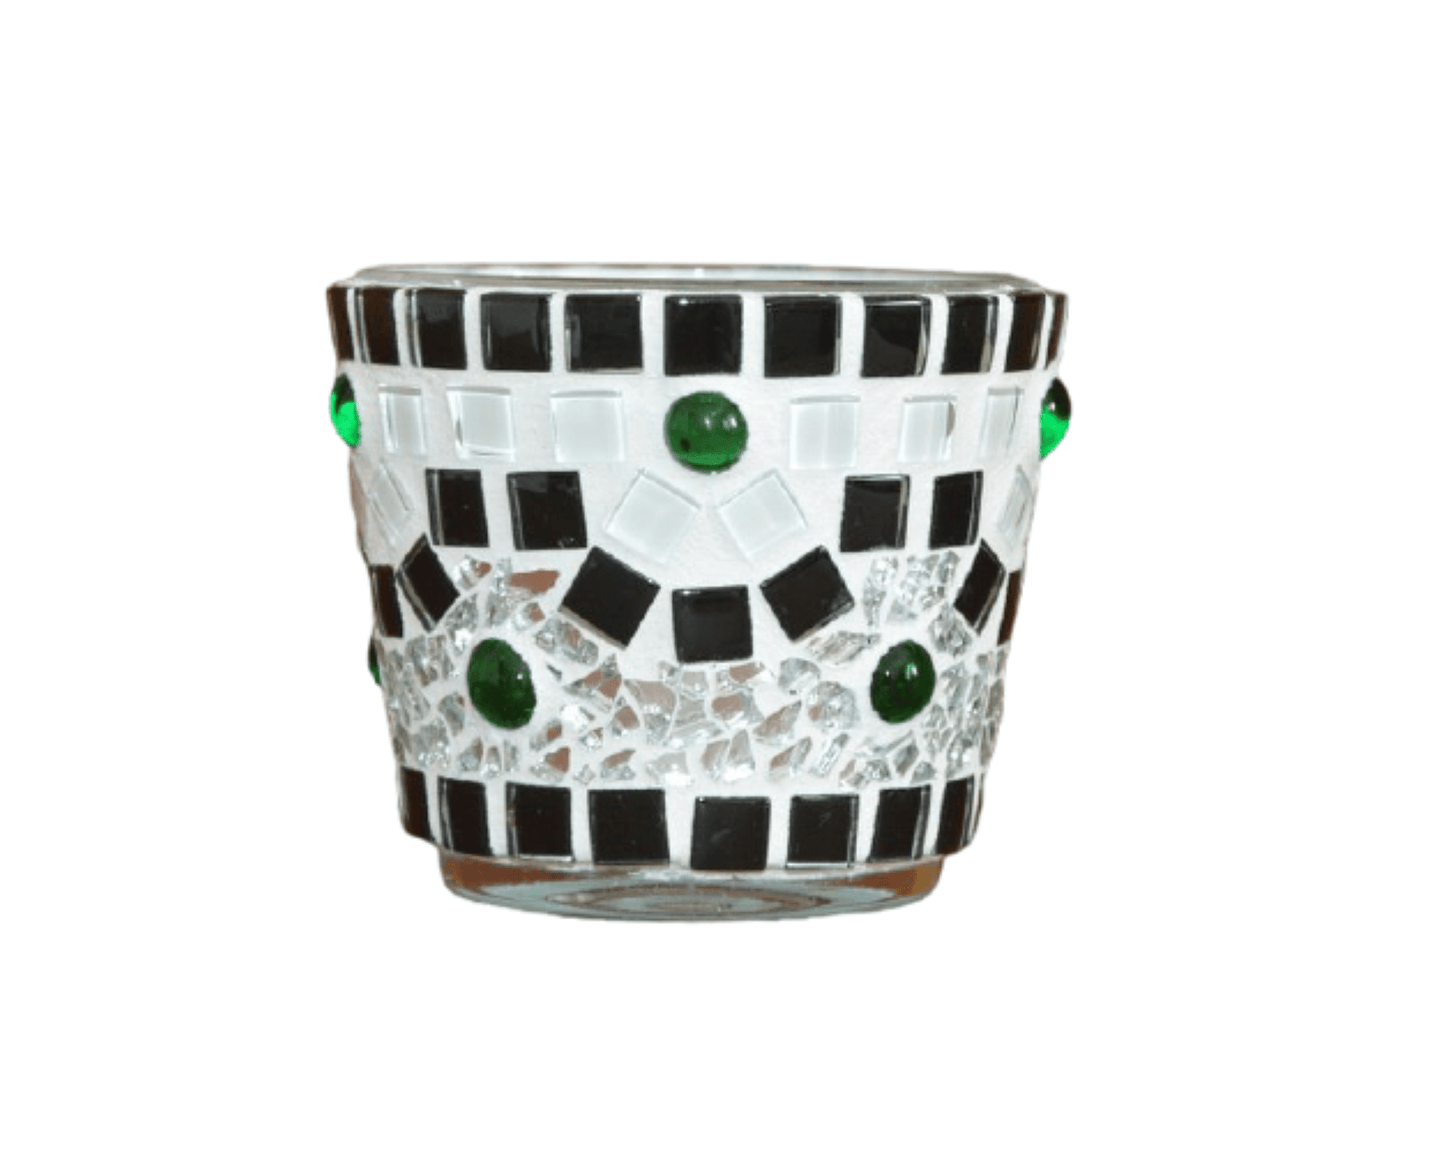 Handgemachtes Windlicht schwarz weiß grün 8 cm hoch - Mosaikkasten aus alt mach neu dekoidee